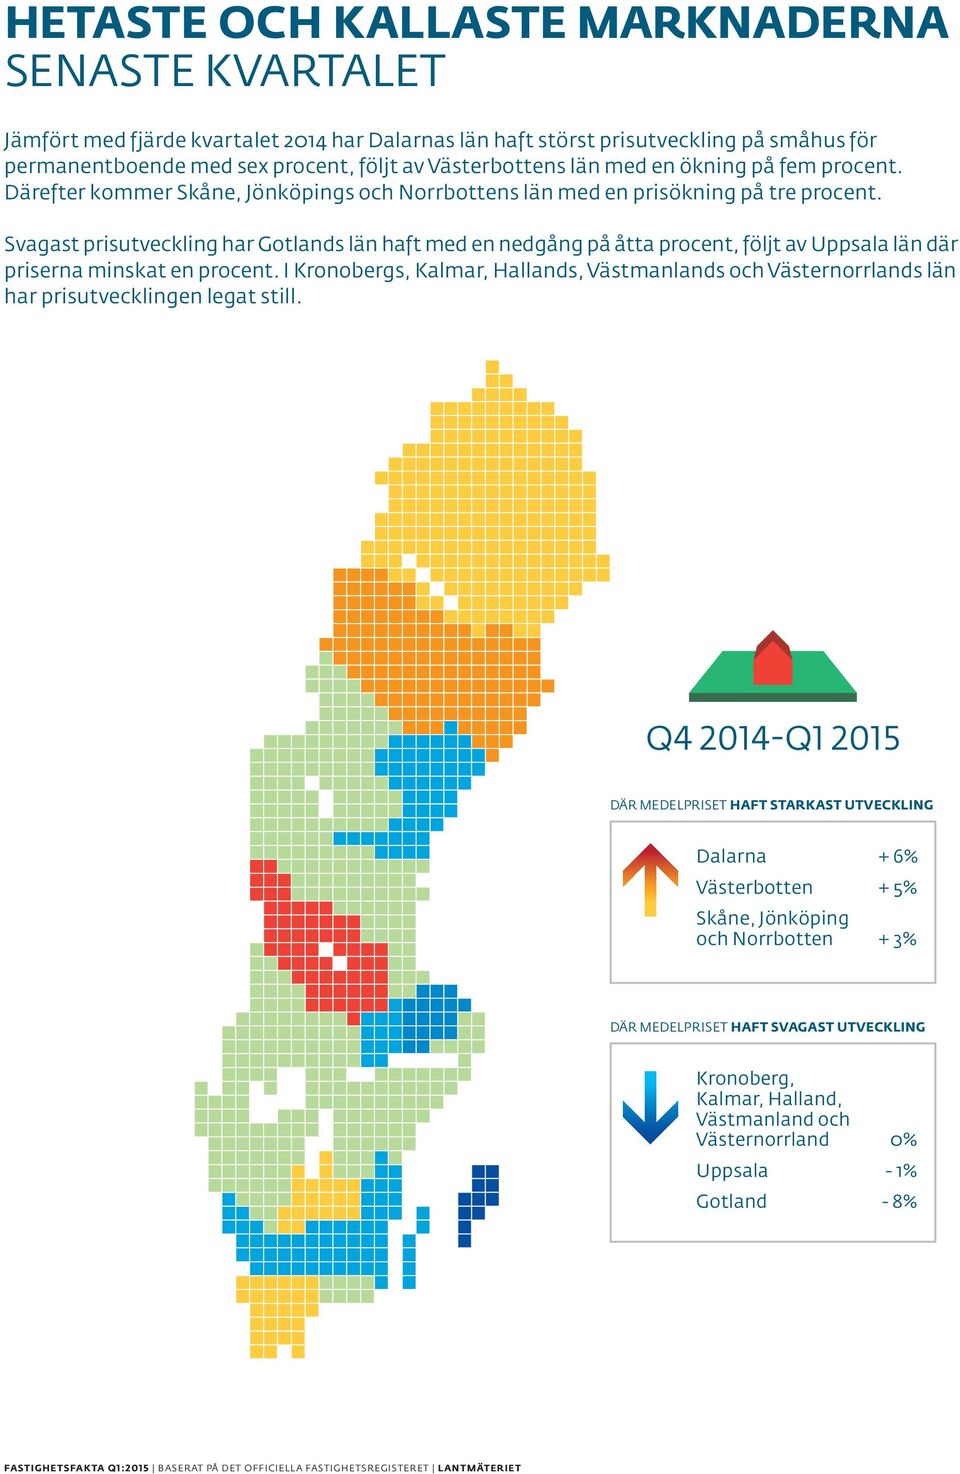 Svagast prisutveckling har Gotlands län haft med en nedgång på åtta procent, följt av Uppsala län där priserna minskat en procent.